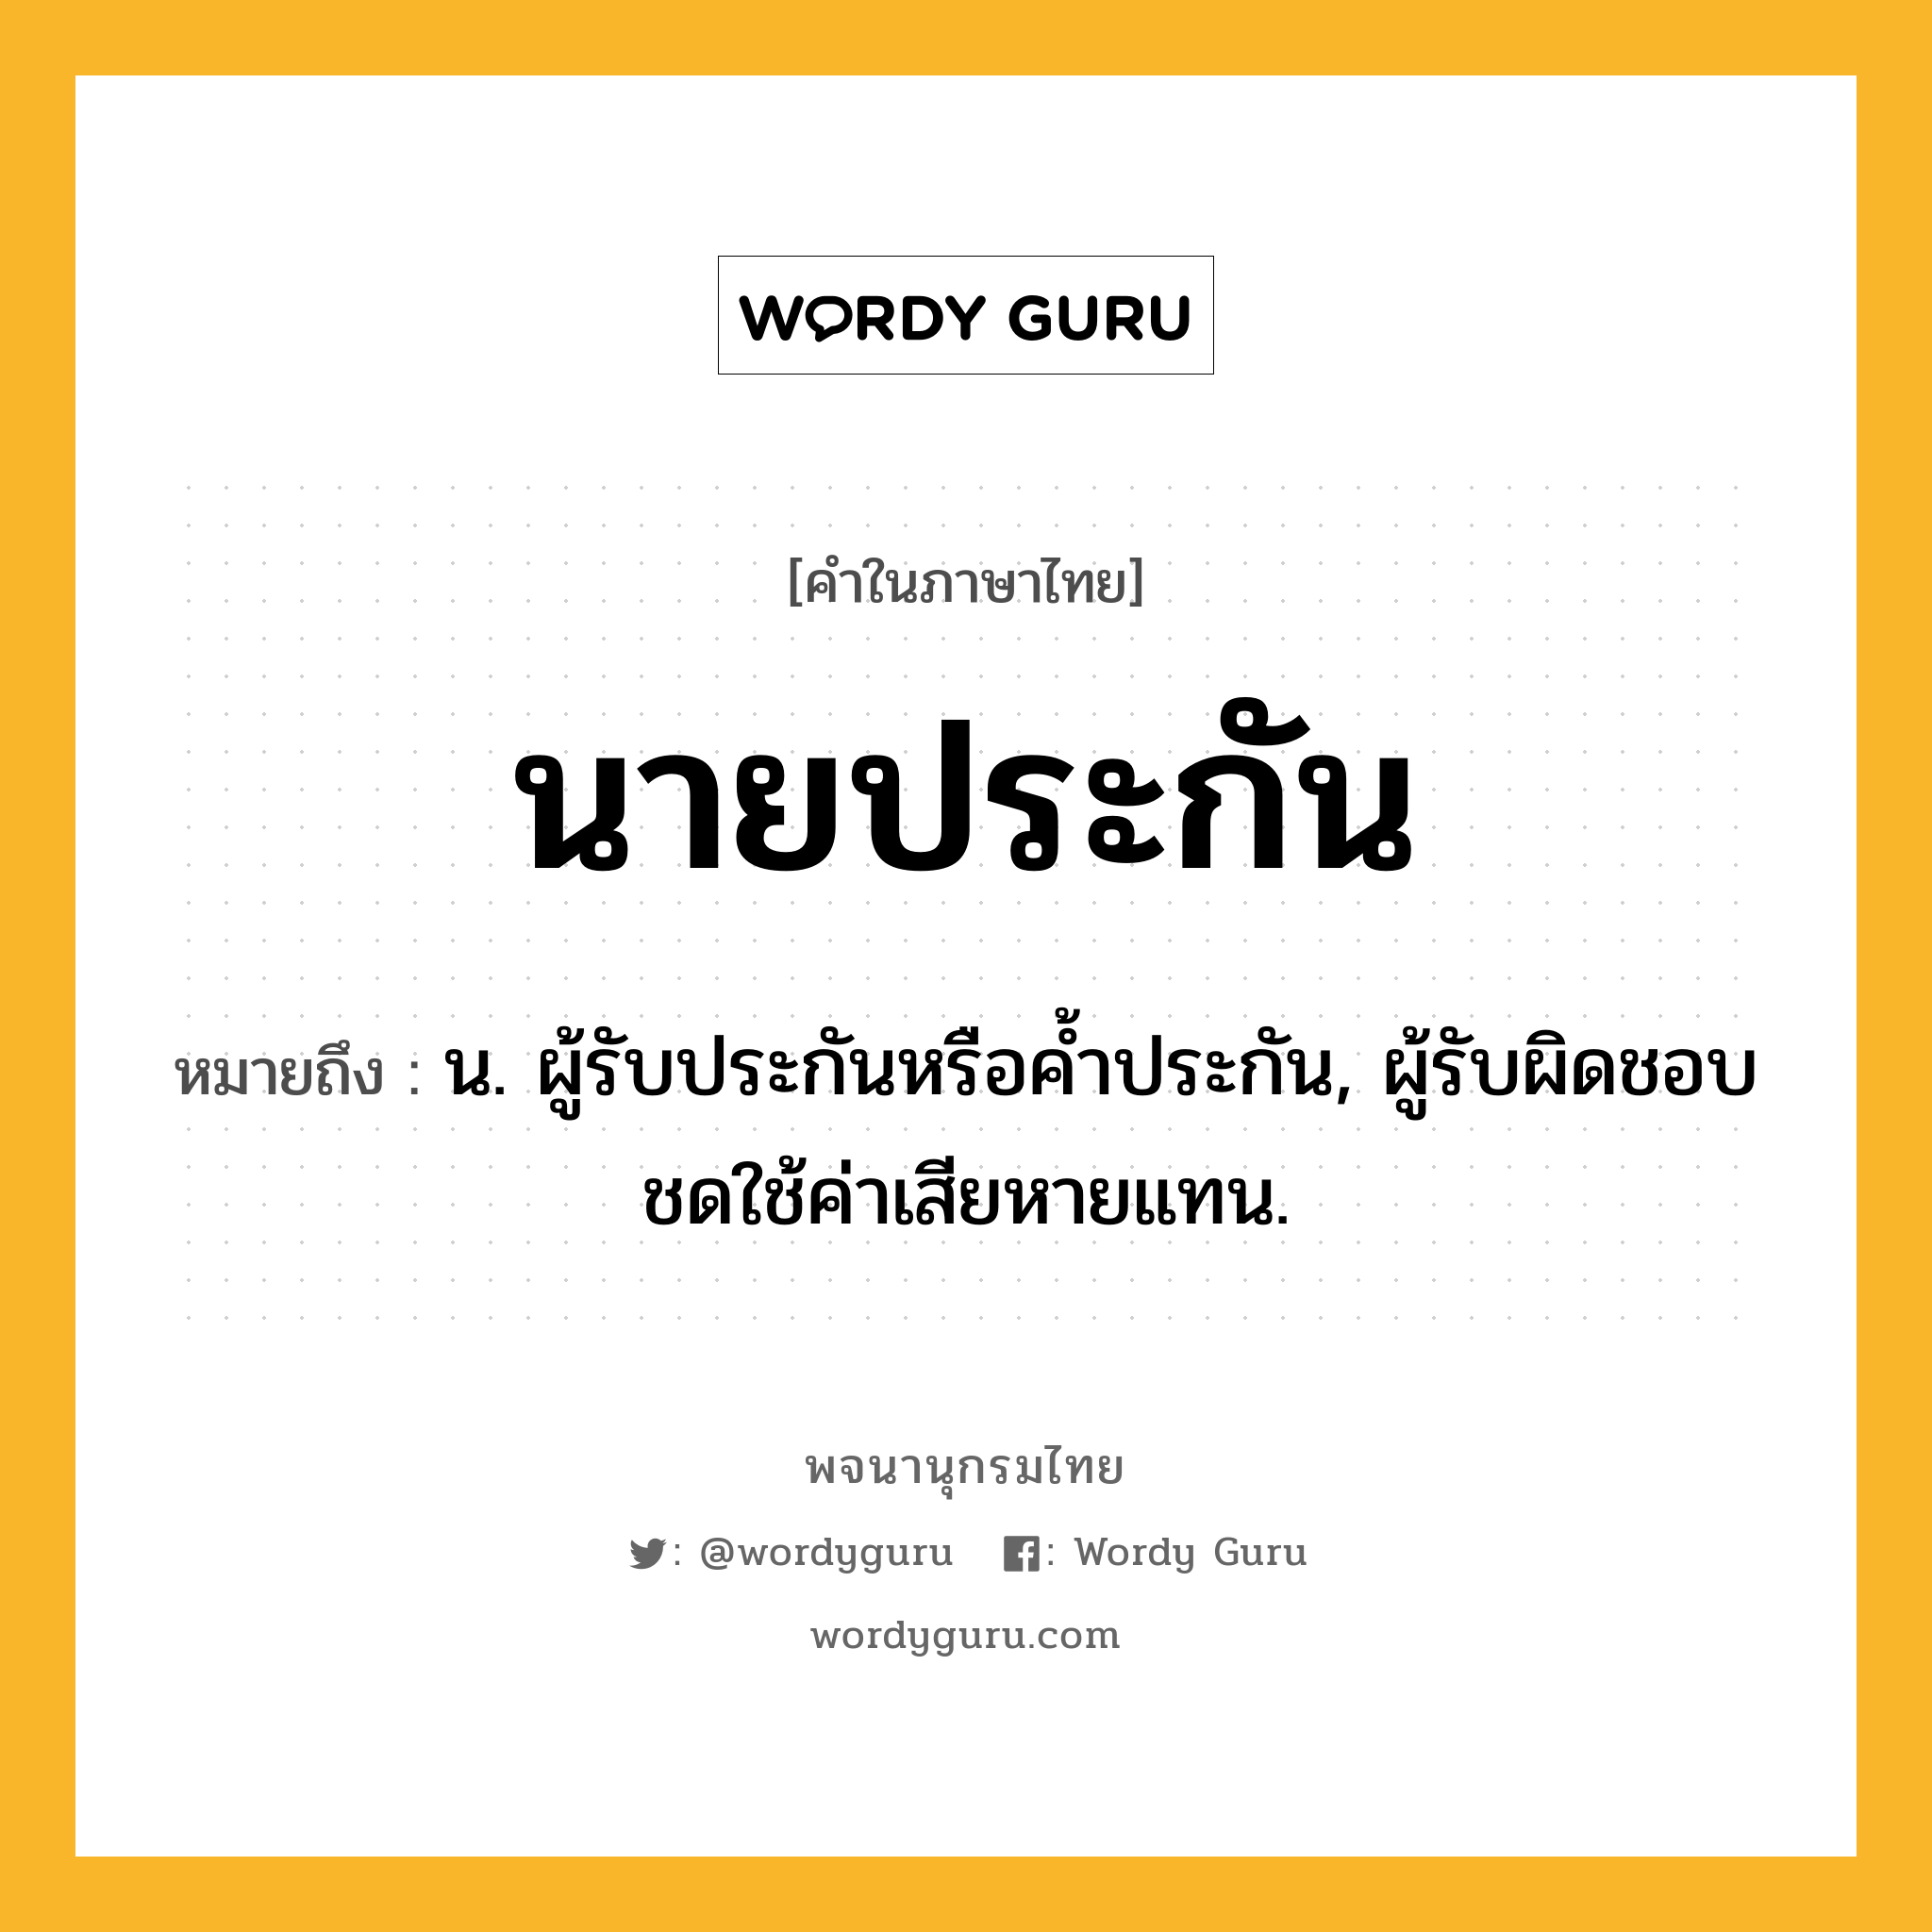 นายประกัน ความหมาย หมายถึงอะไร?, คำในภาษาไทย นายประกัน หมายถึง น. ผู้รับประกันหรือคํ้าประกัน, ผู้รับผิดชอบชดใช้ค่าเสียหายแทน.